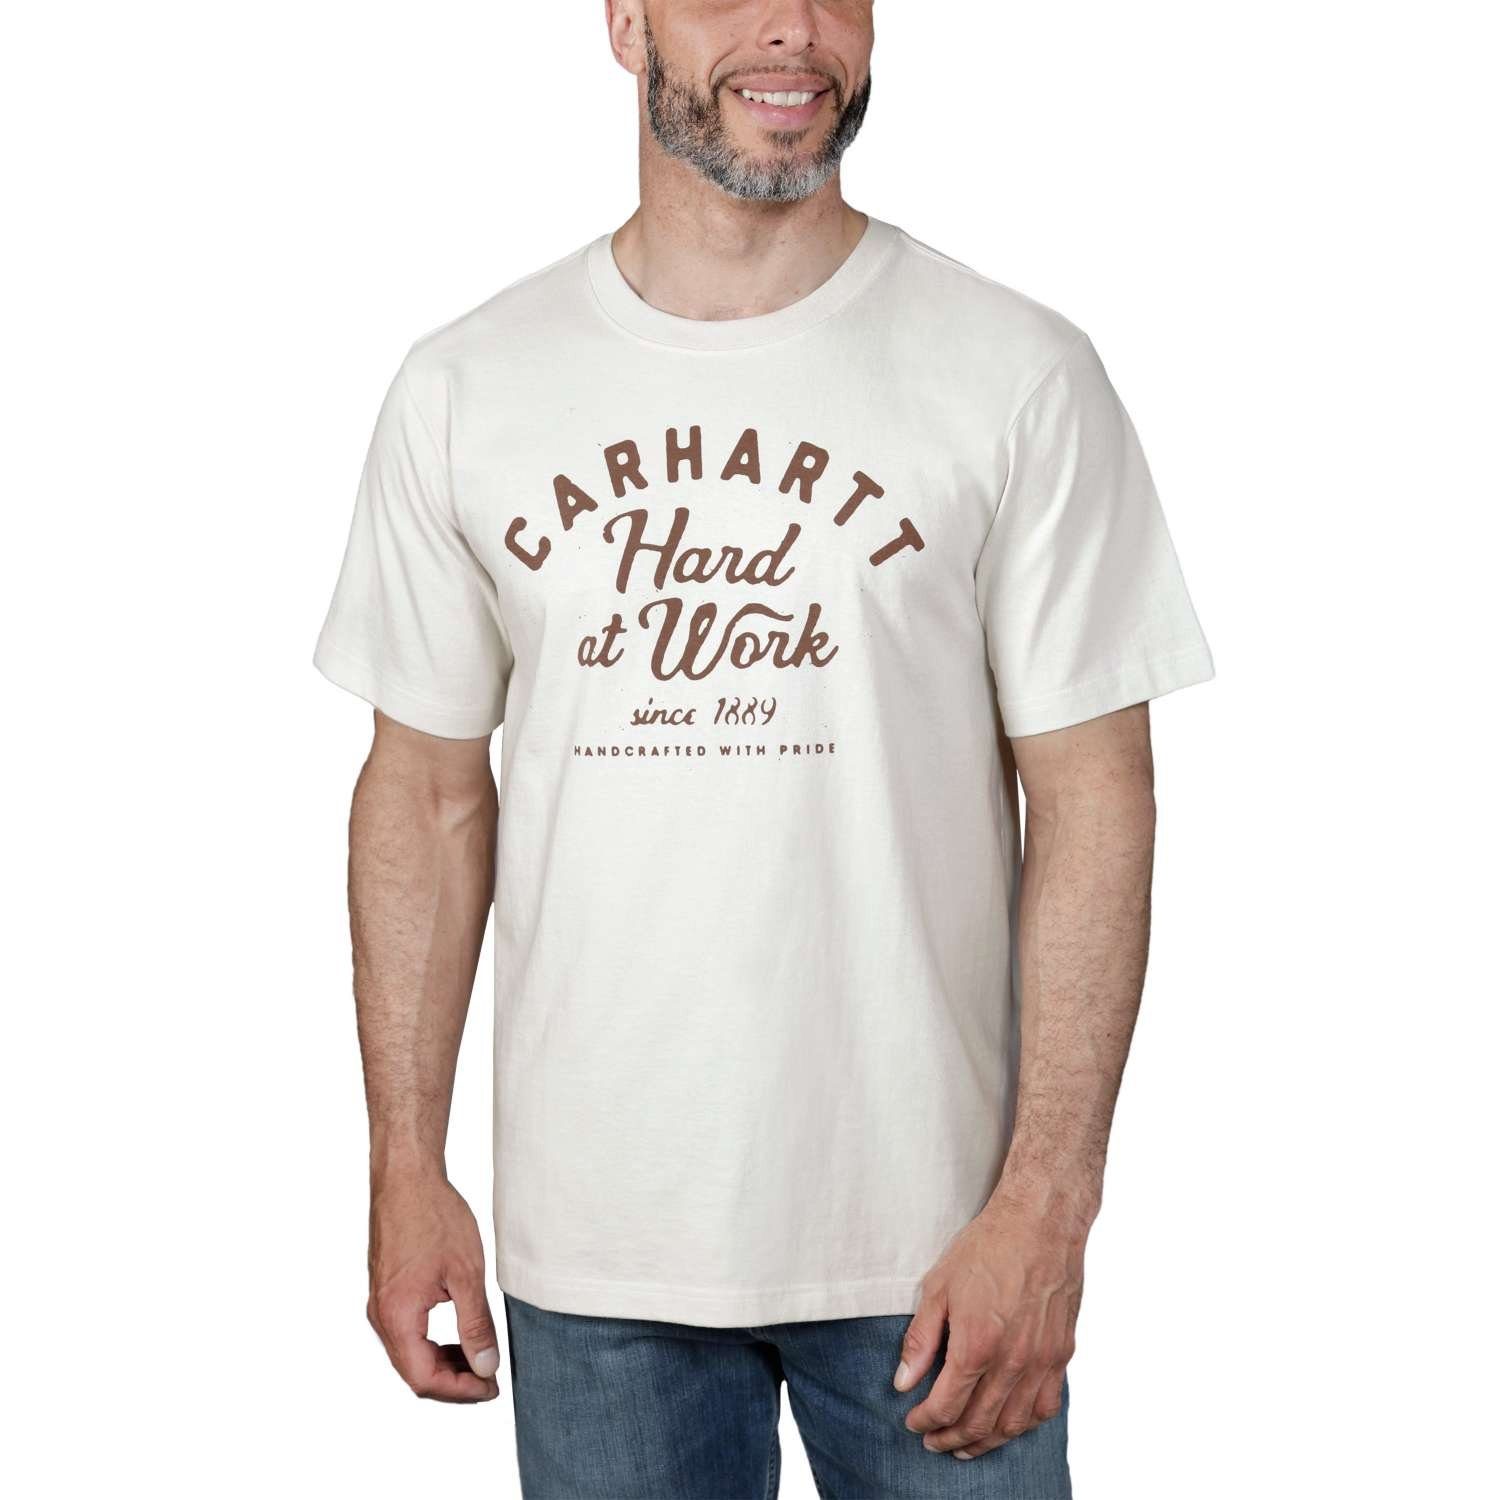 Carhartt T-Shirt malt T-Shirt Carhartt Relaxed S/S Fit Adult Herren Graphic